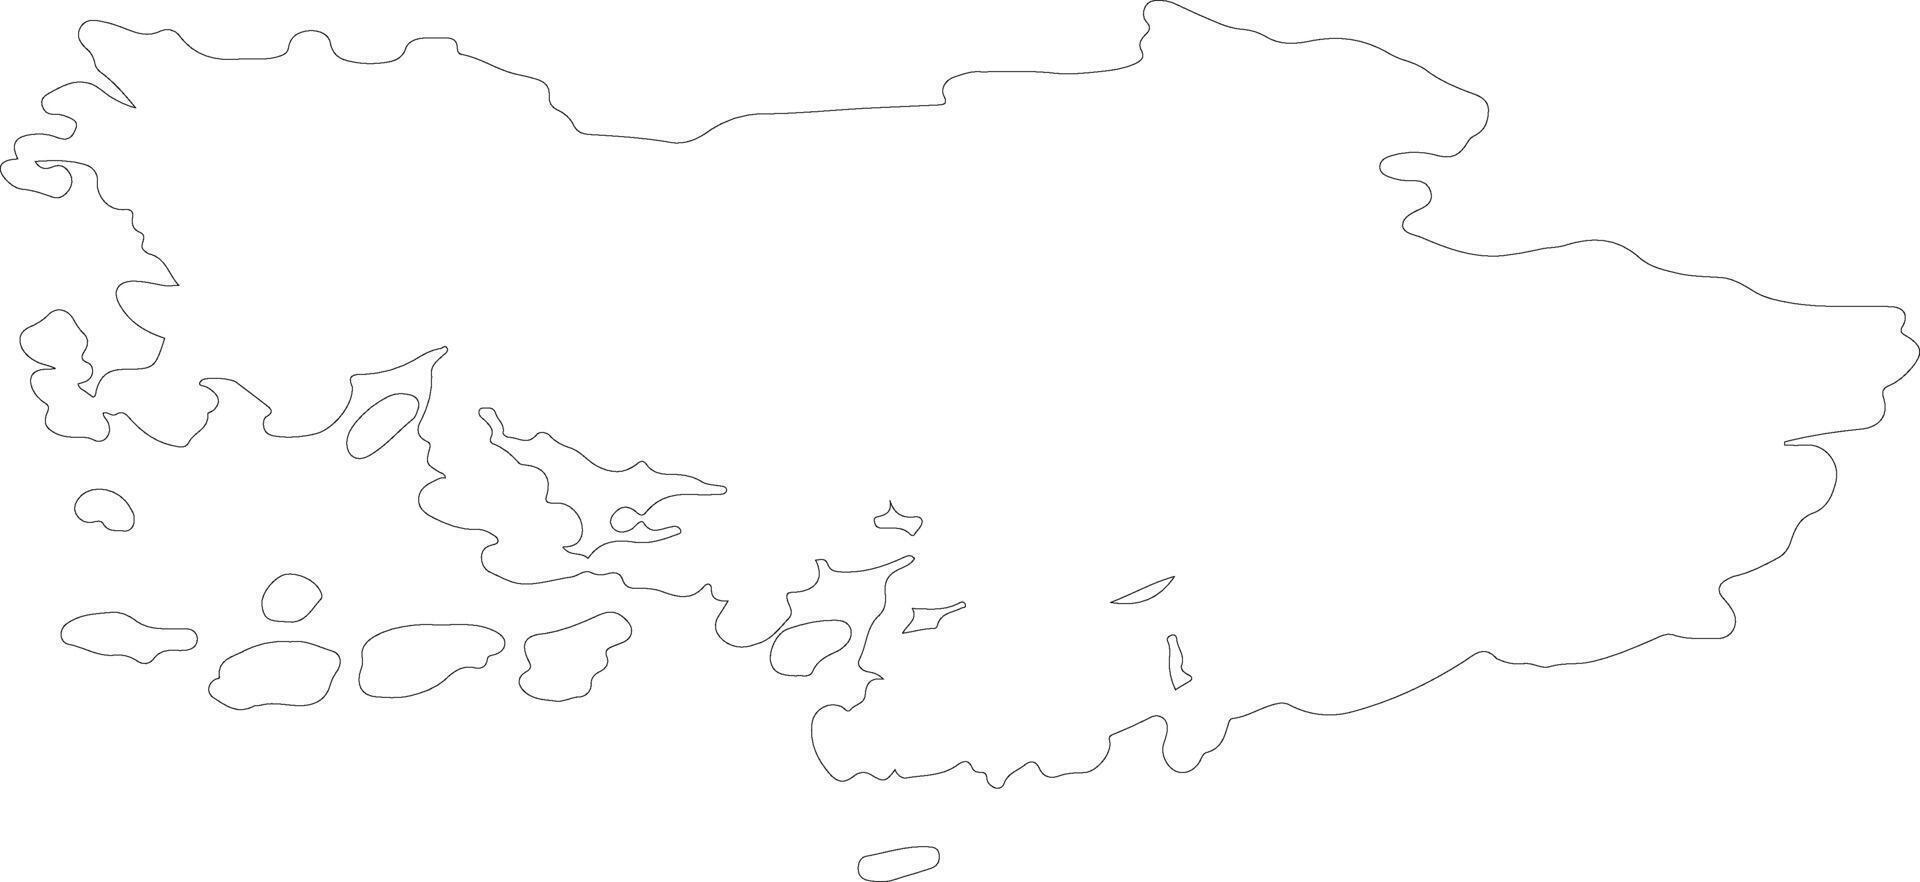 Finlandia apropiado Finlandia contorno mapa vector